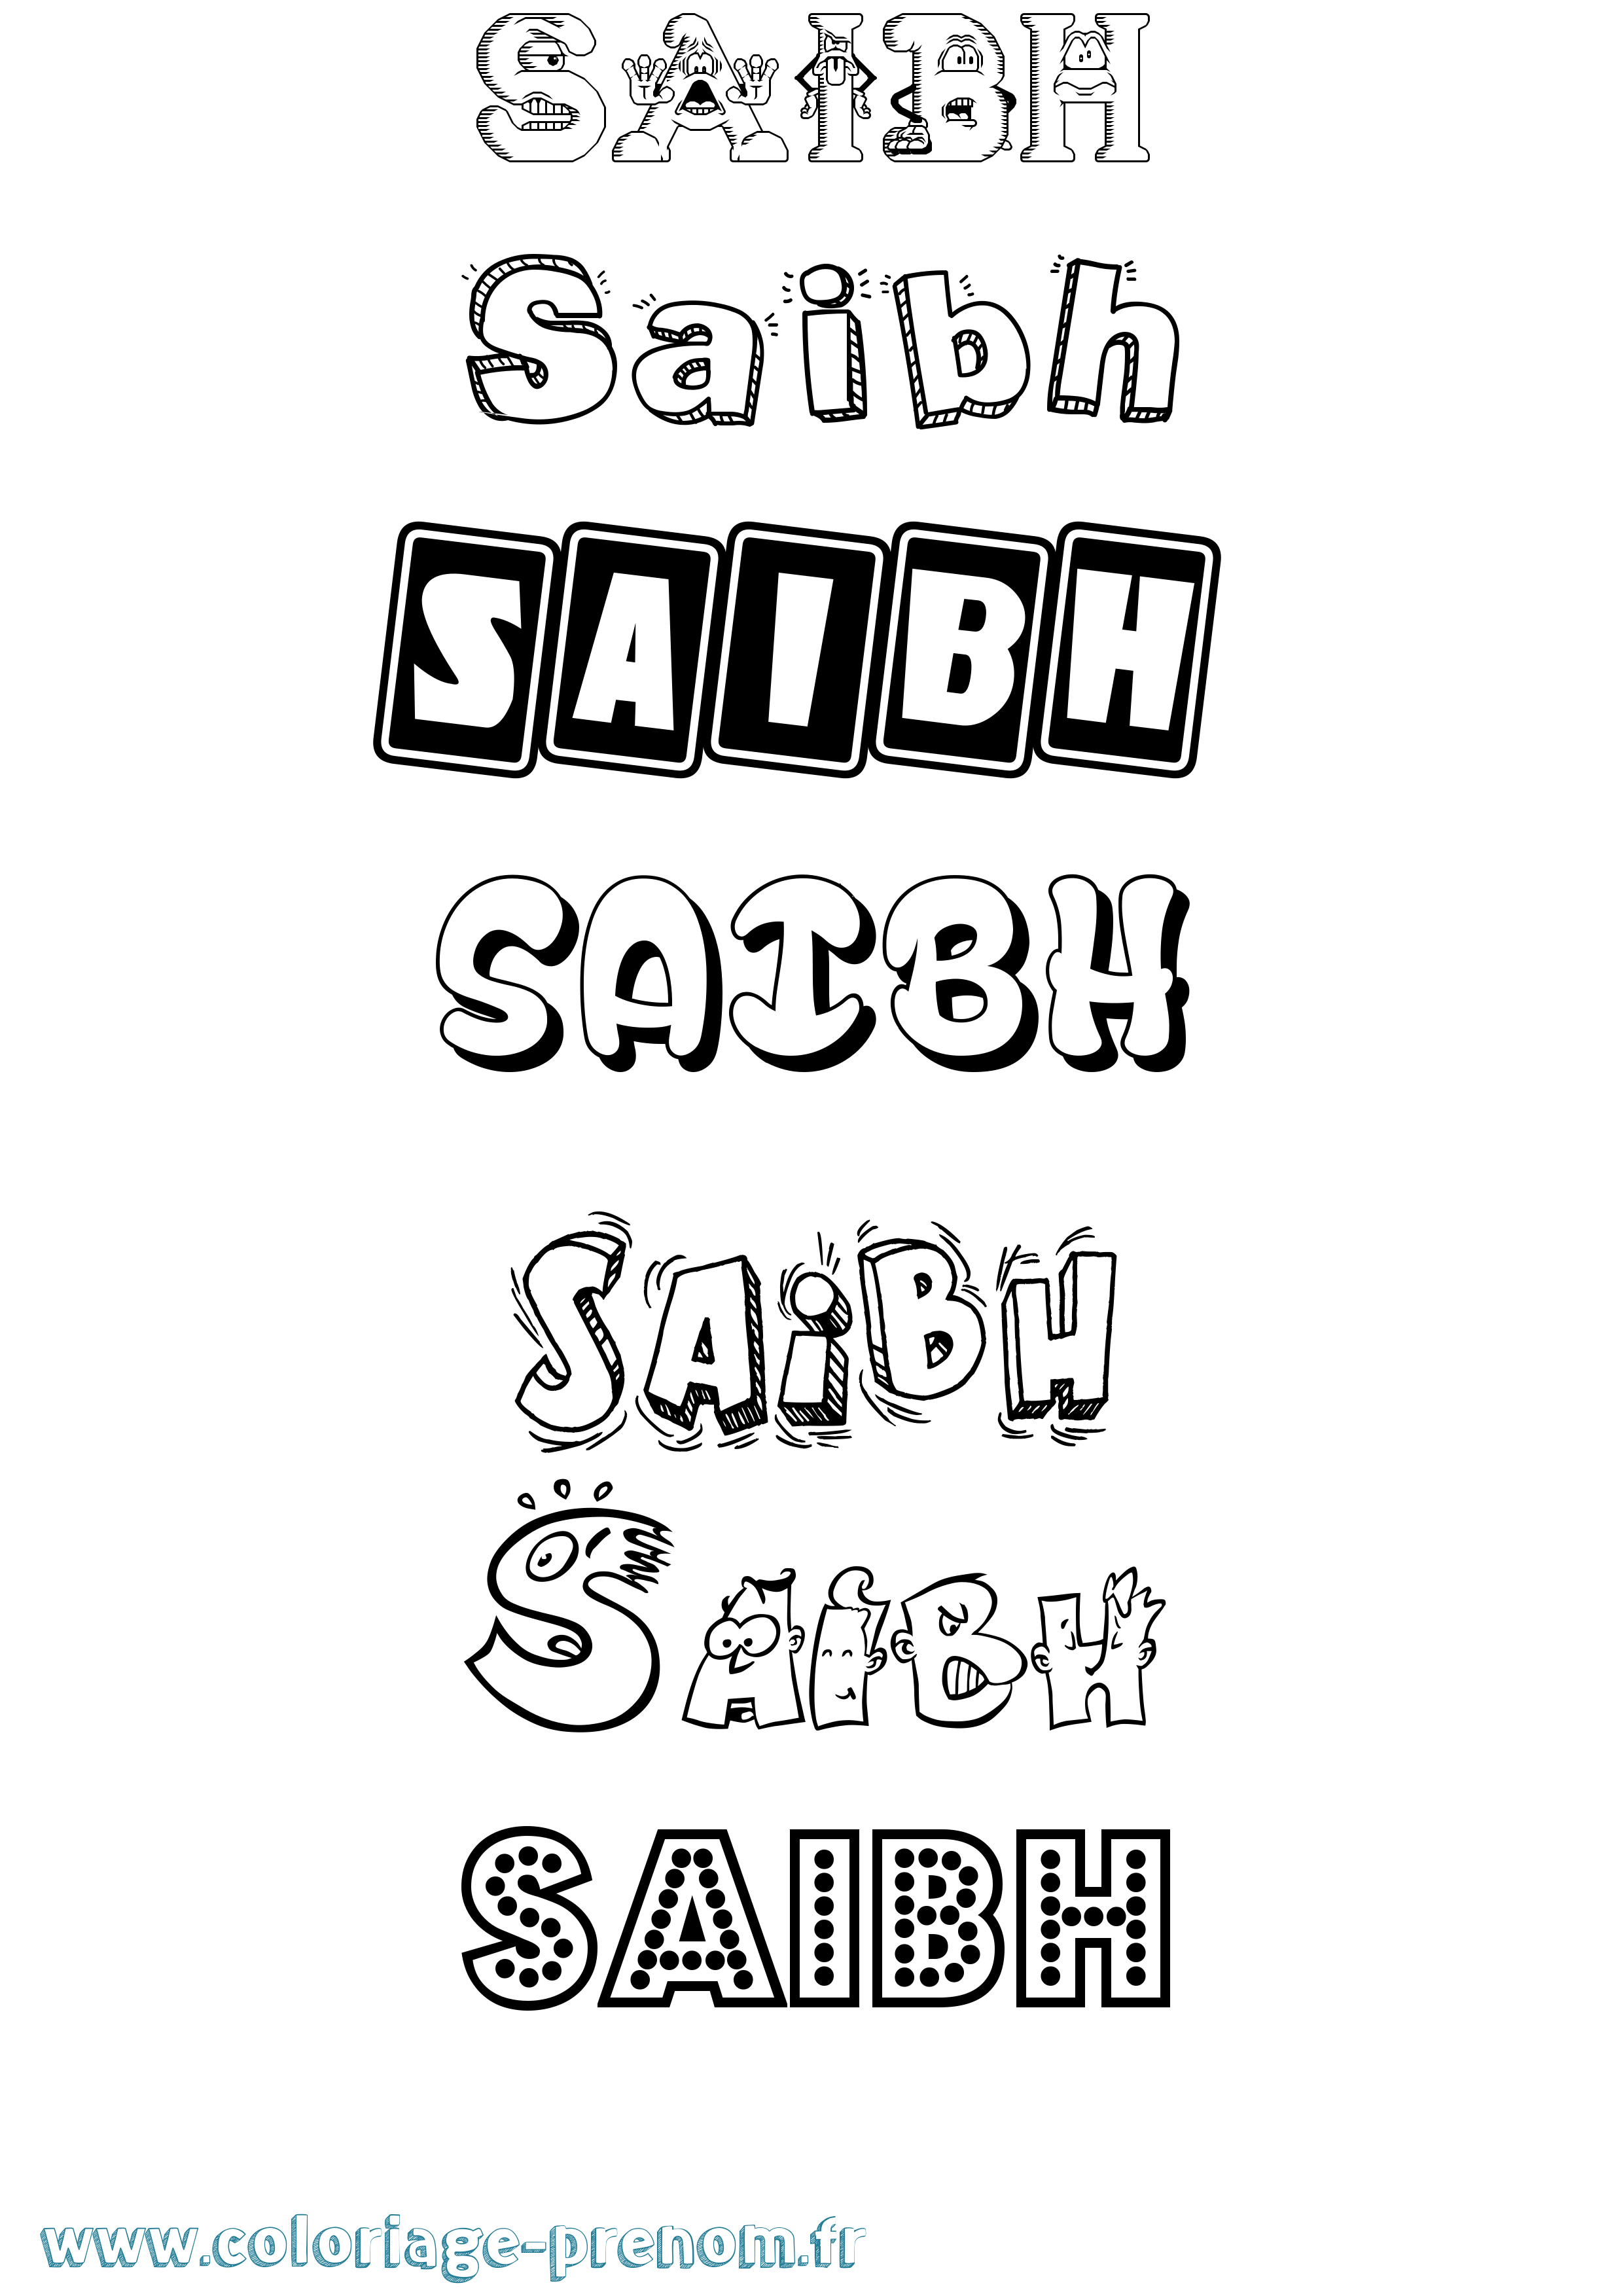 Coloriage prénom Saibh Fun